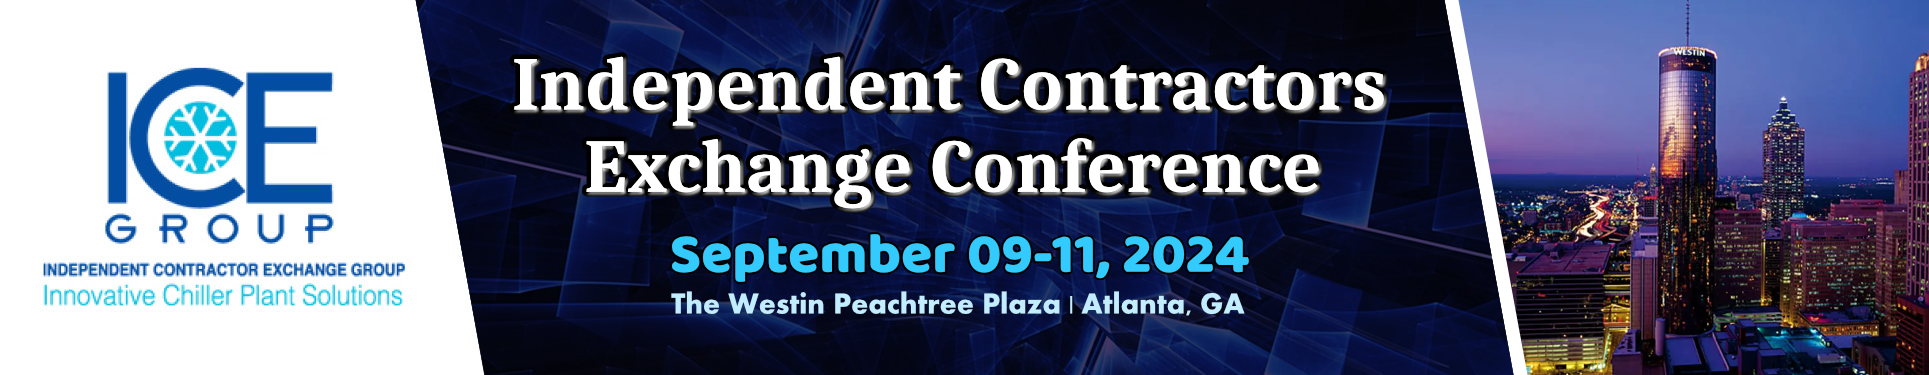 Independent Contractors Exchange Conference 2024